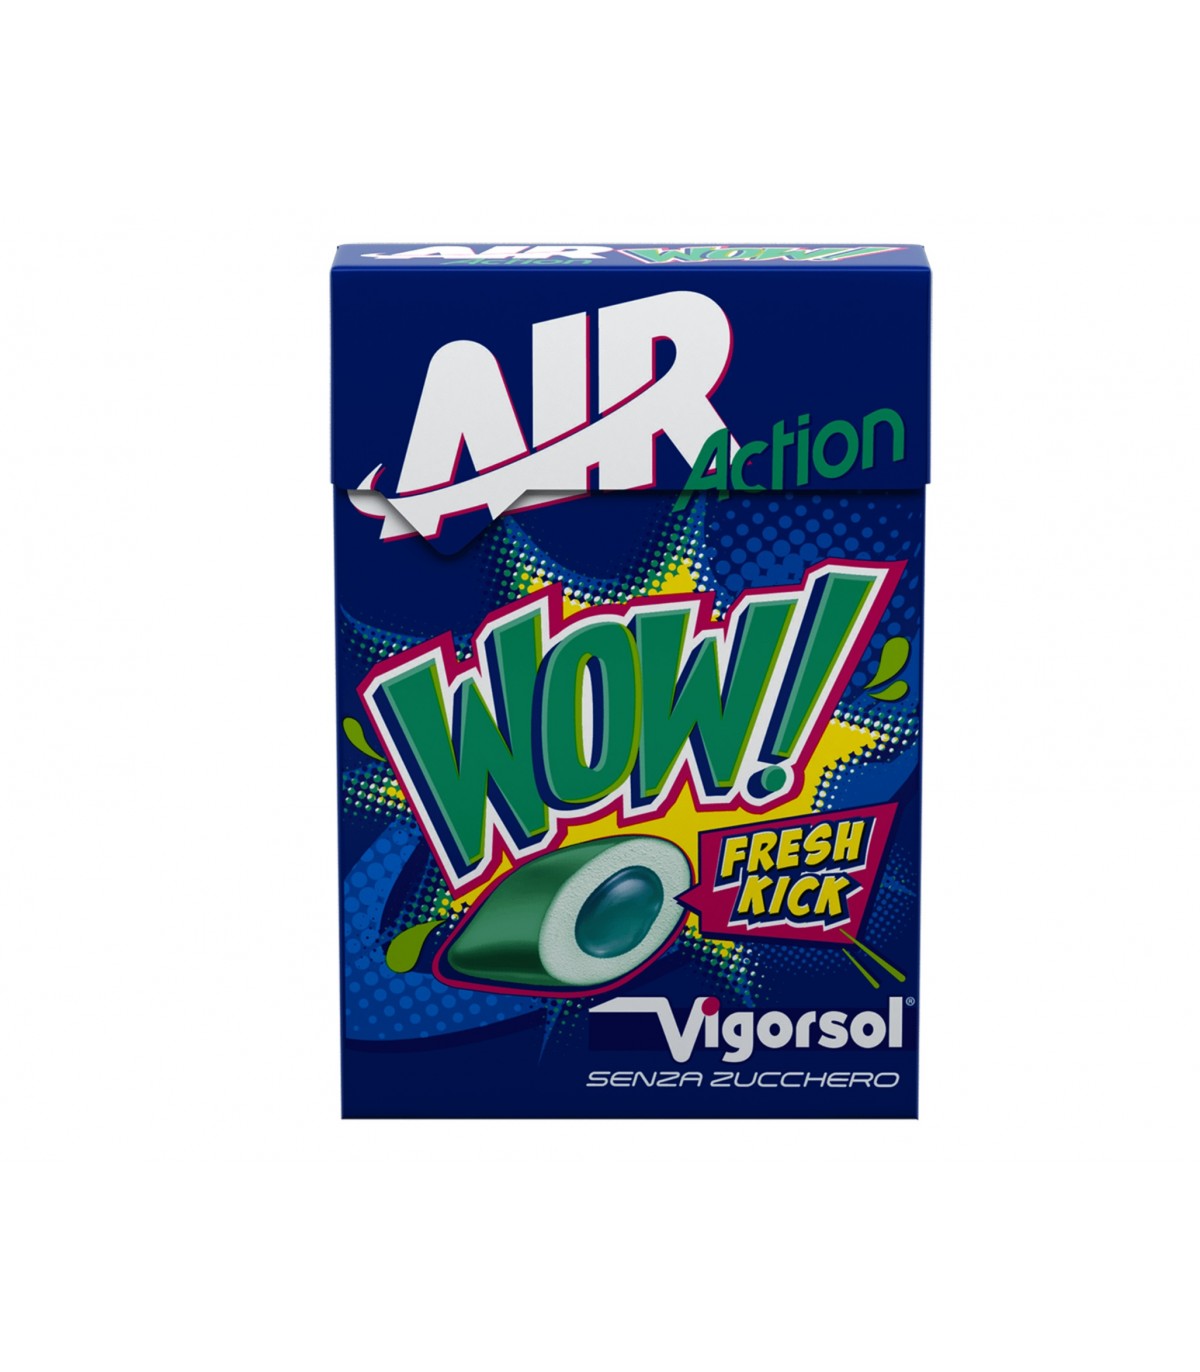 Vigorsol x20 Air Action